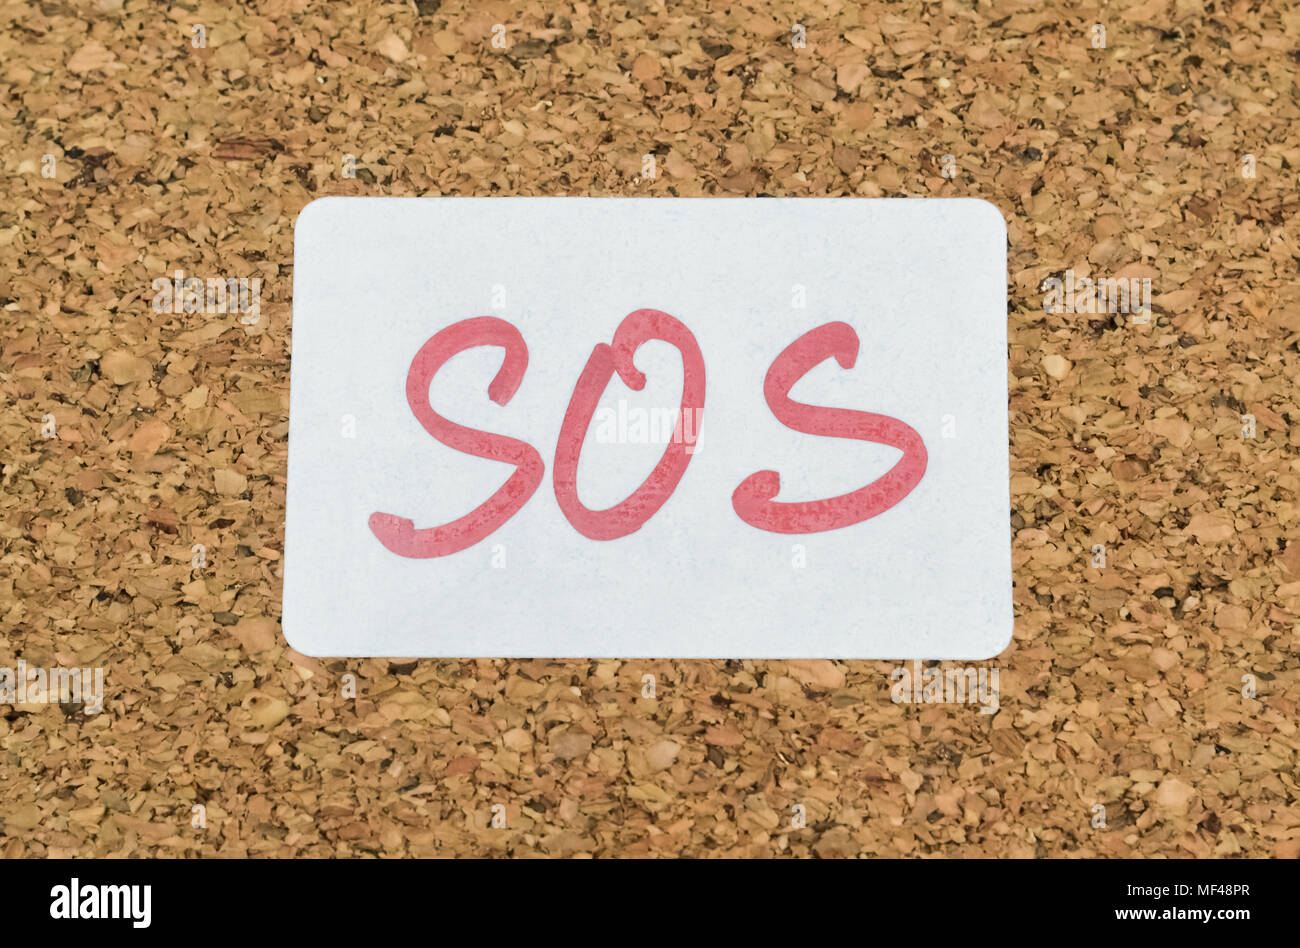 Wort SOS handschriftlich auf einem Aufkleber an eine Pinnwand angeheftet Stockfoto